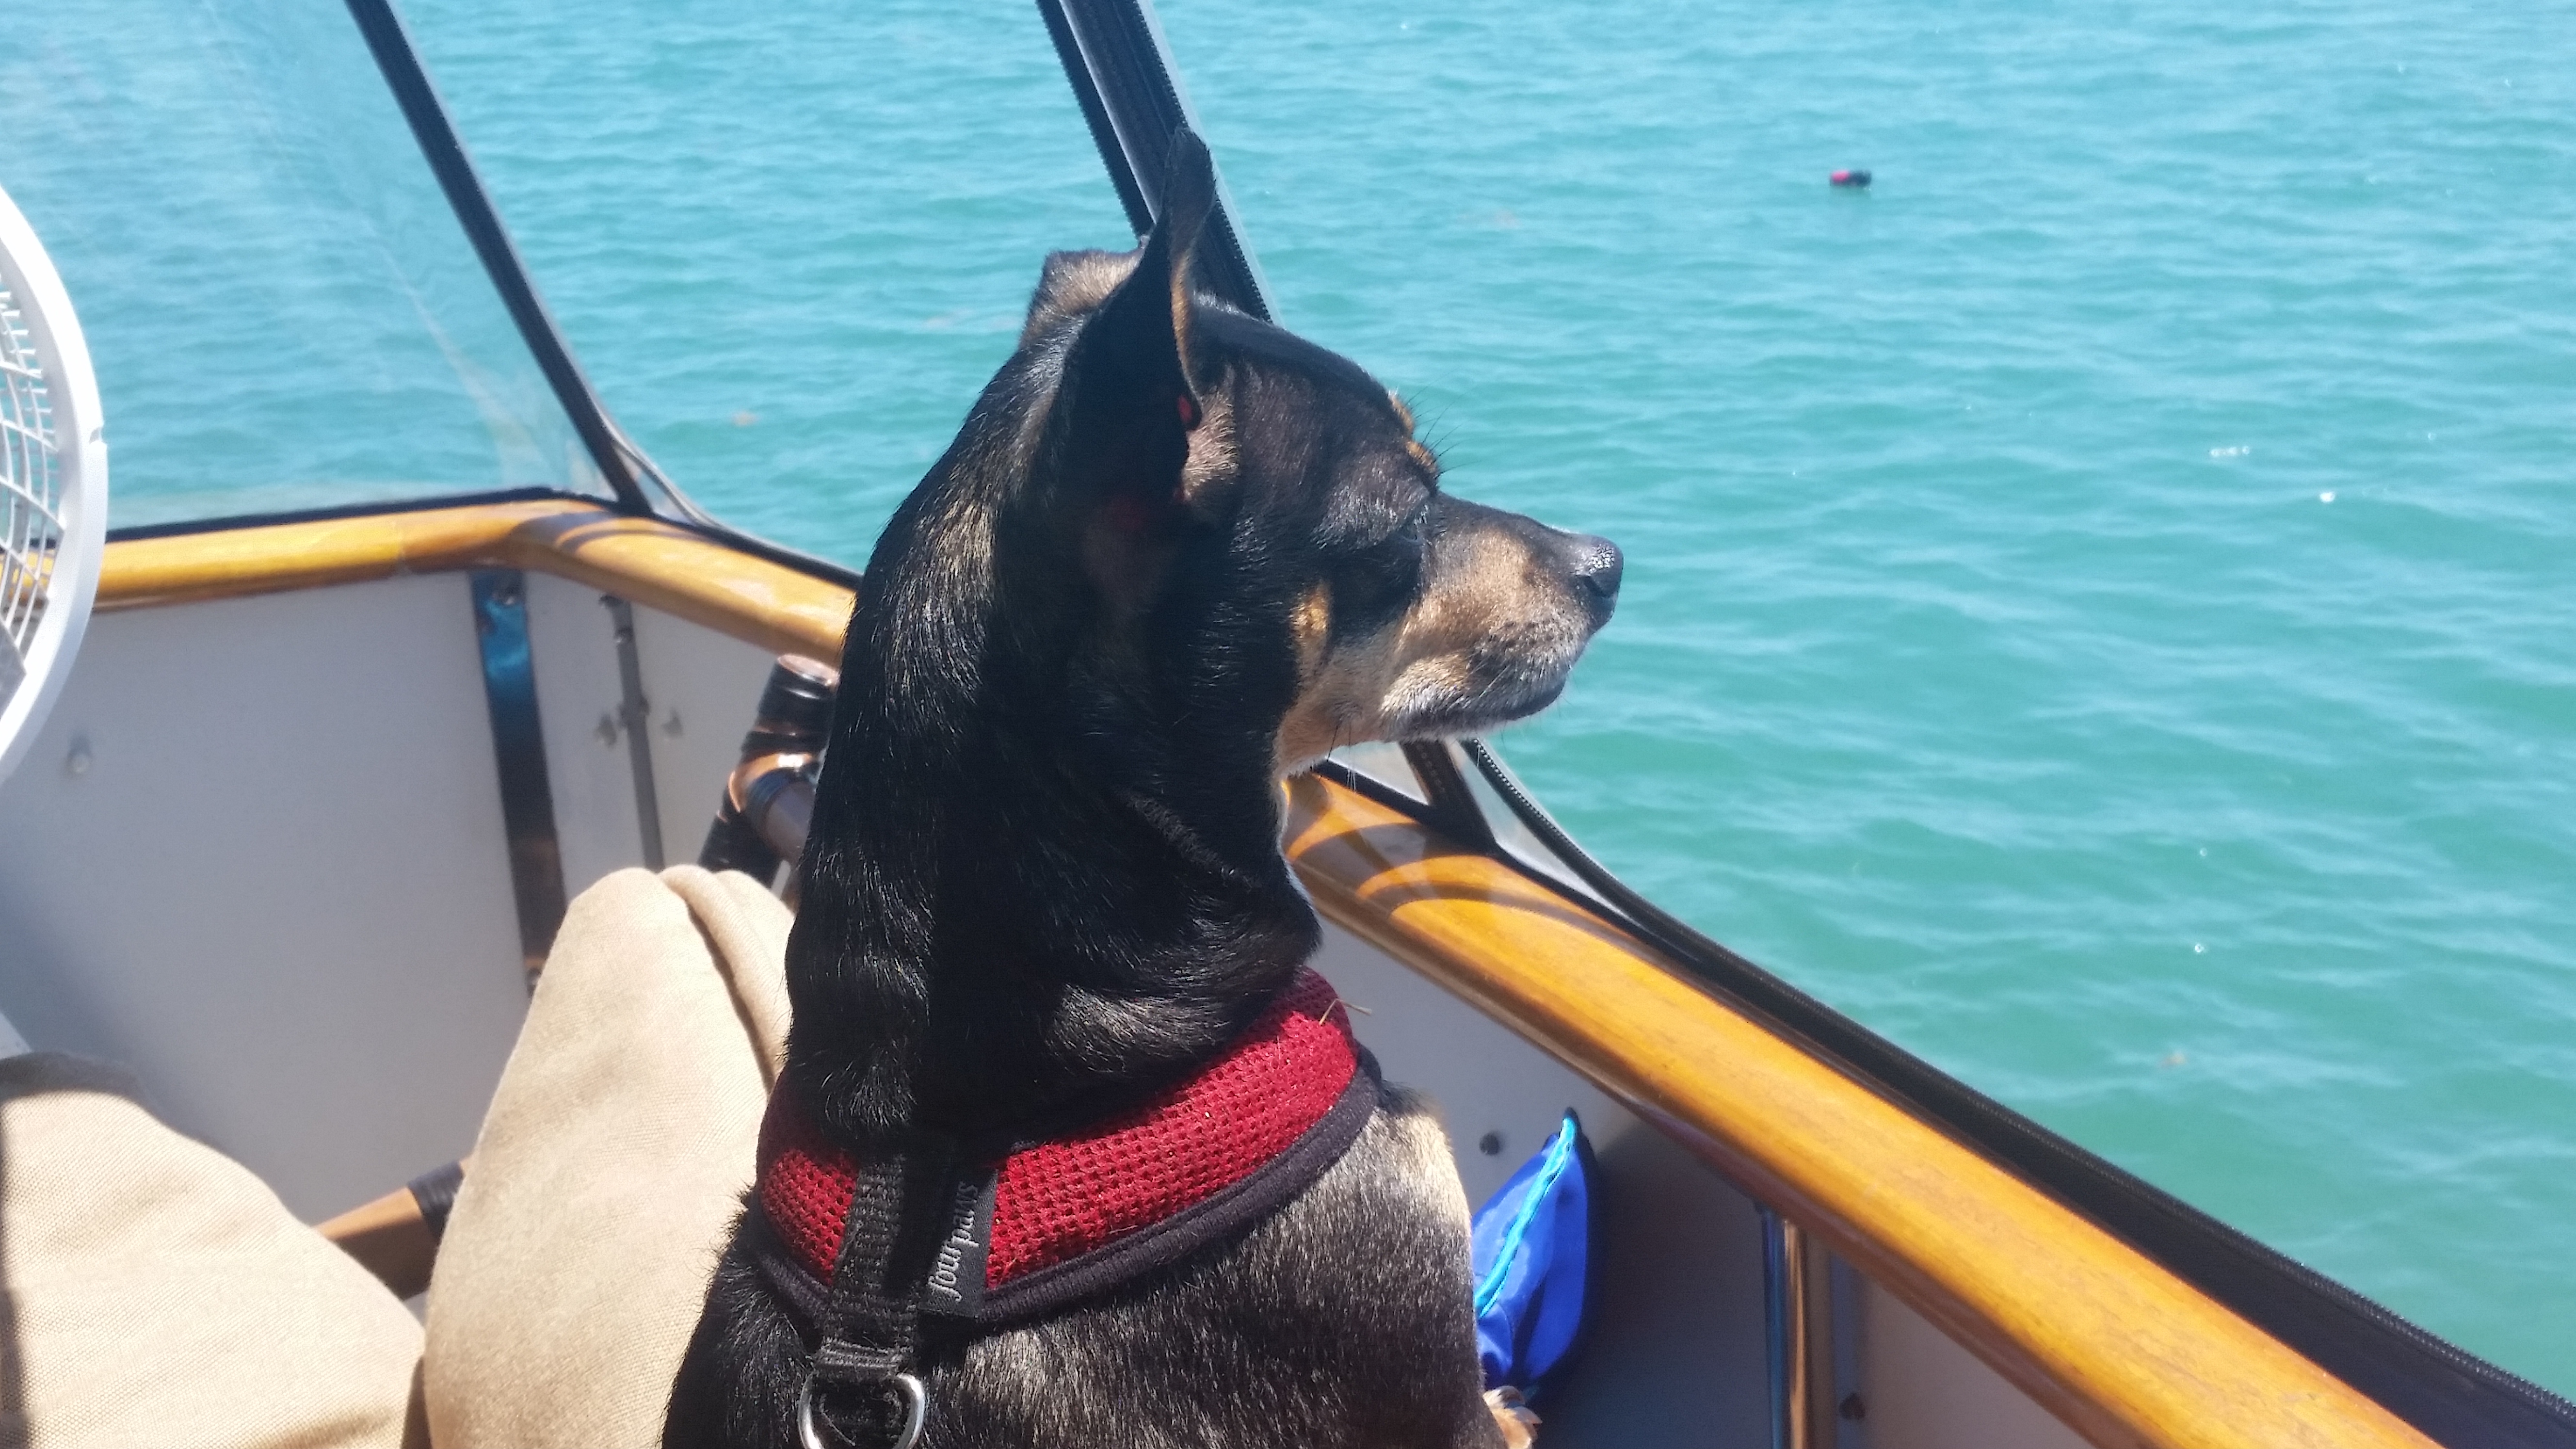 Perito the Boat Dog